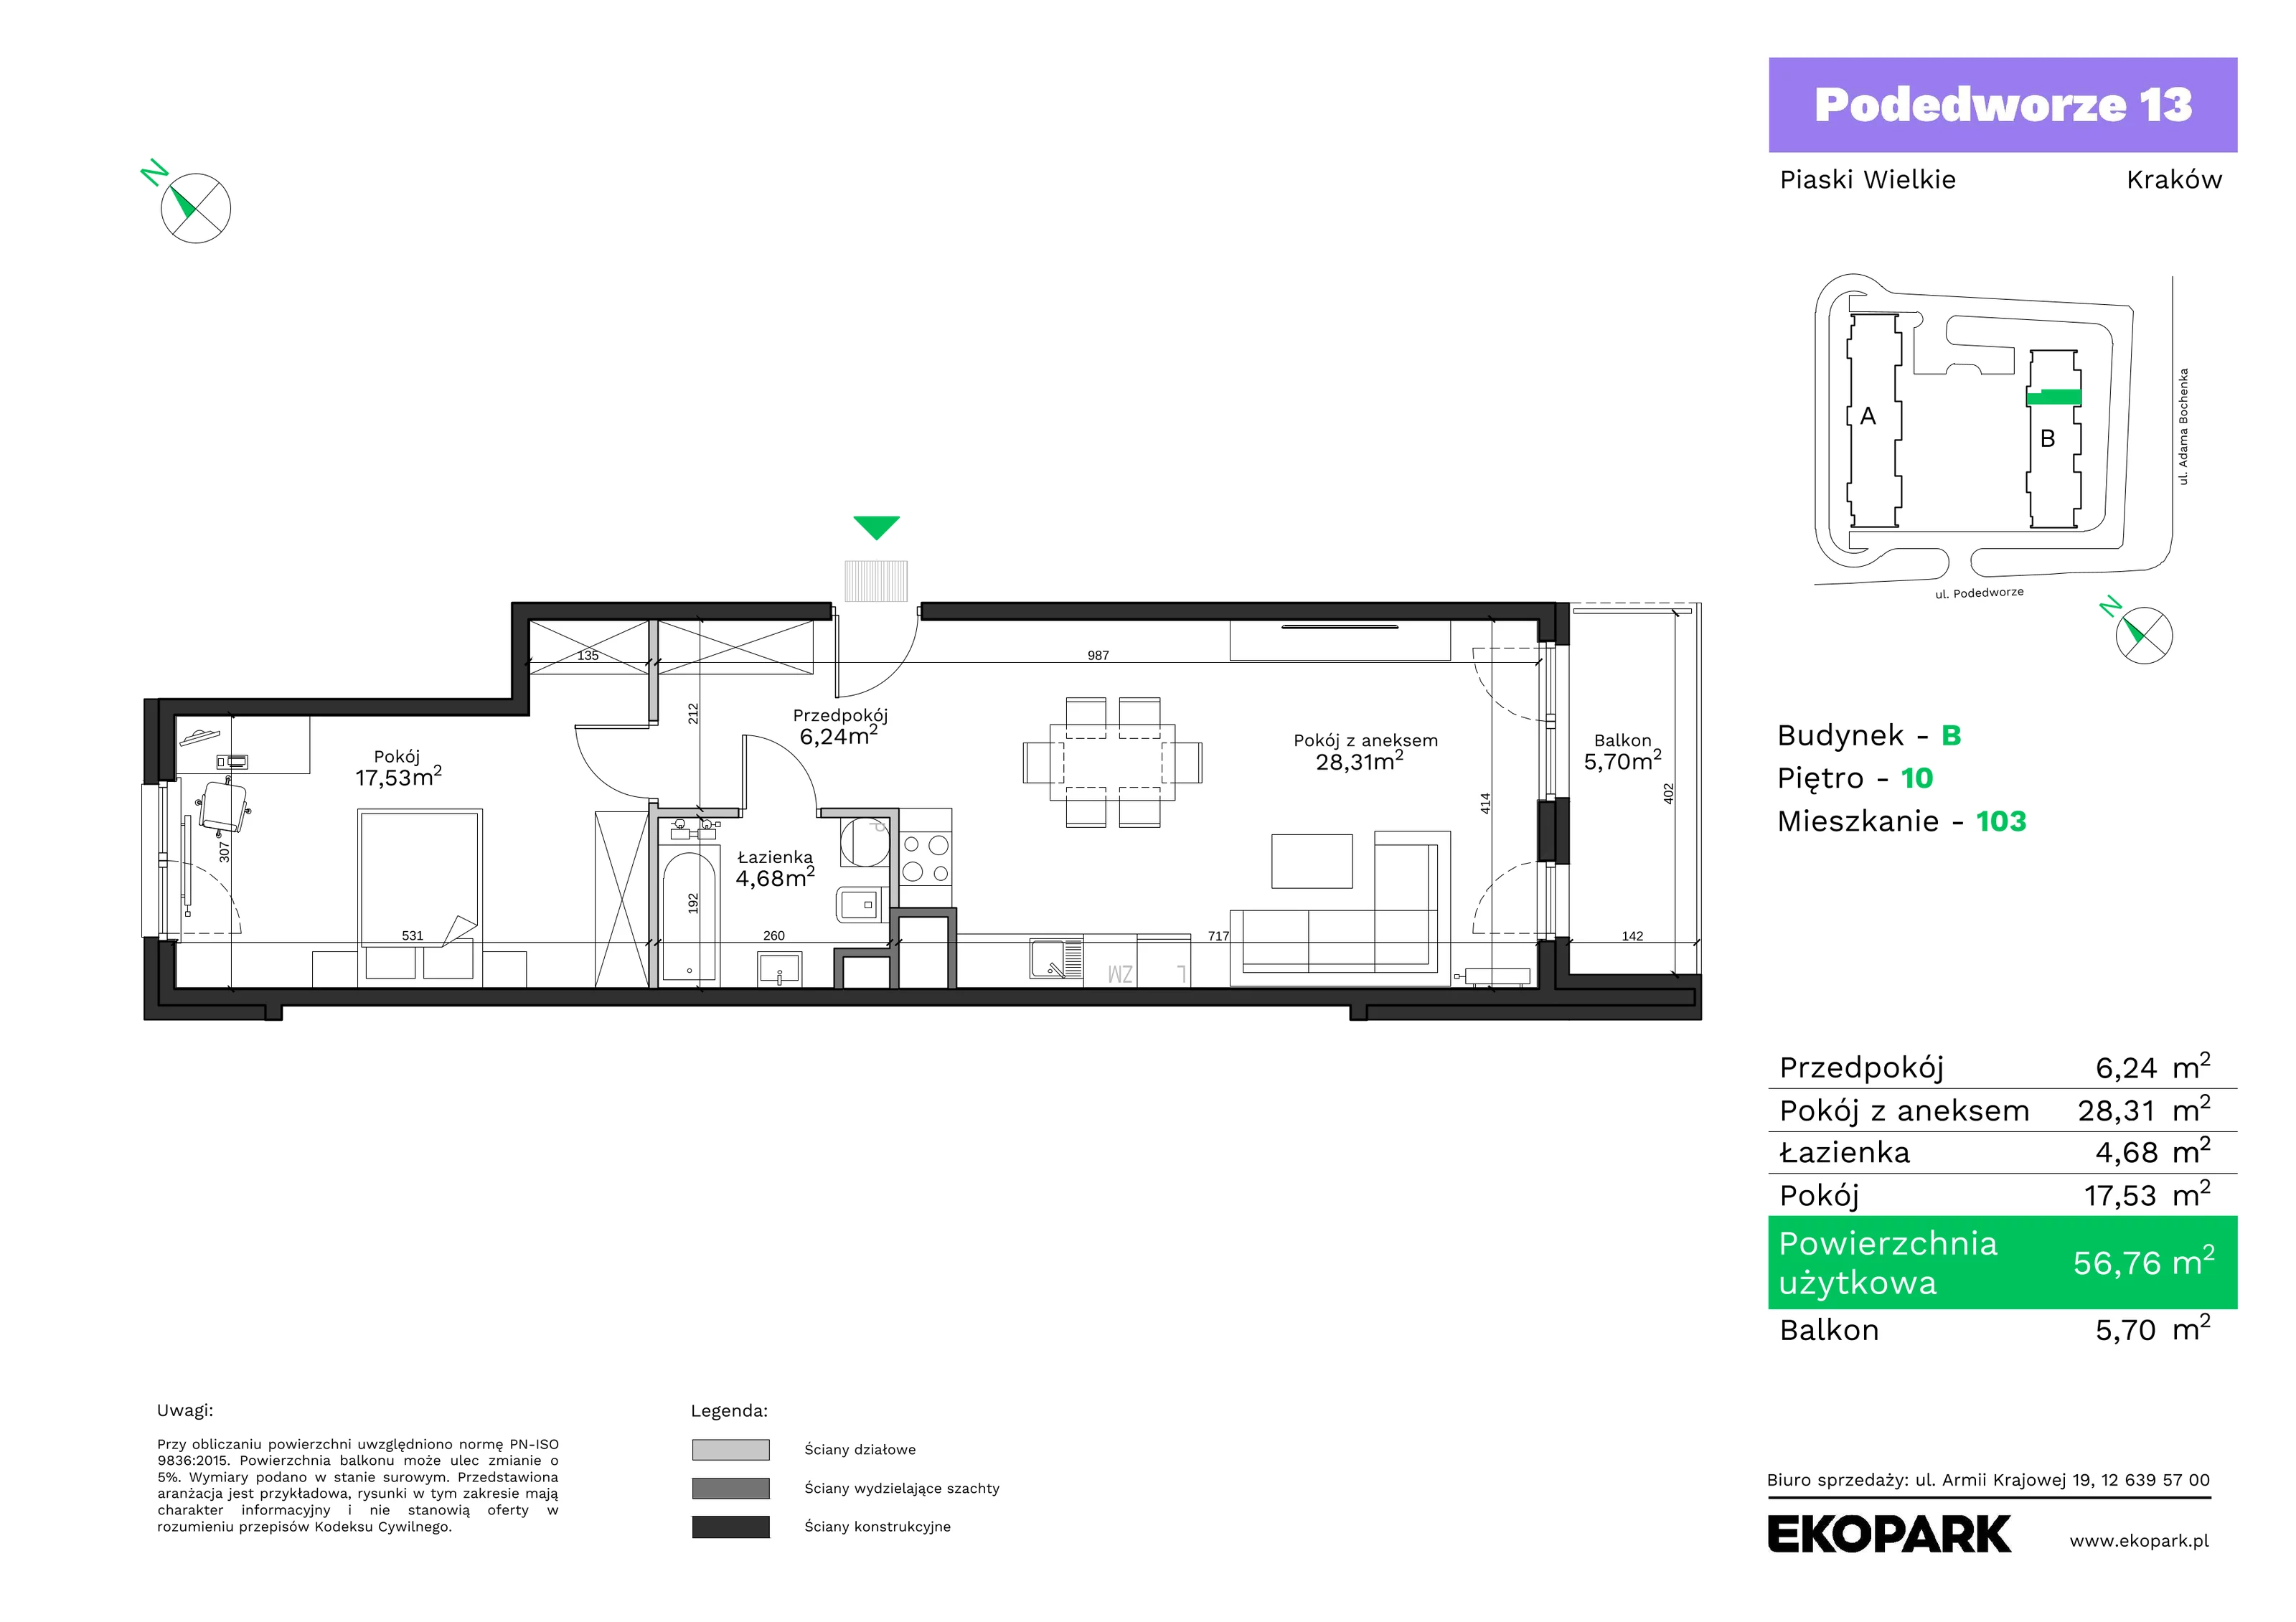 Mieszkanie 56,76 m², piętro 10, oferta nr B103, Podedworze 13, Kraków, Podgórze Duchackie, Piaski Wielkie, ul. Podedworze 13